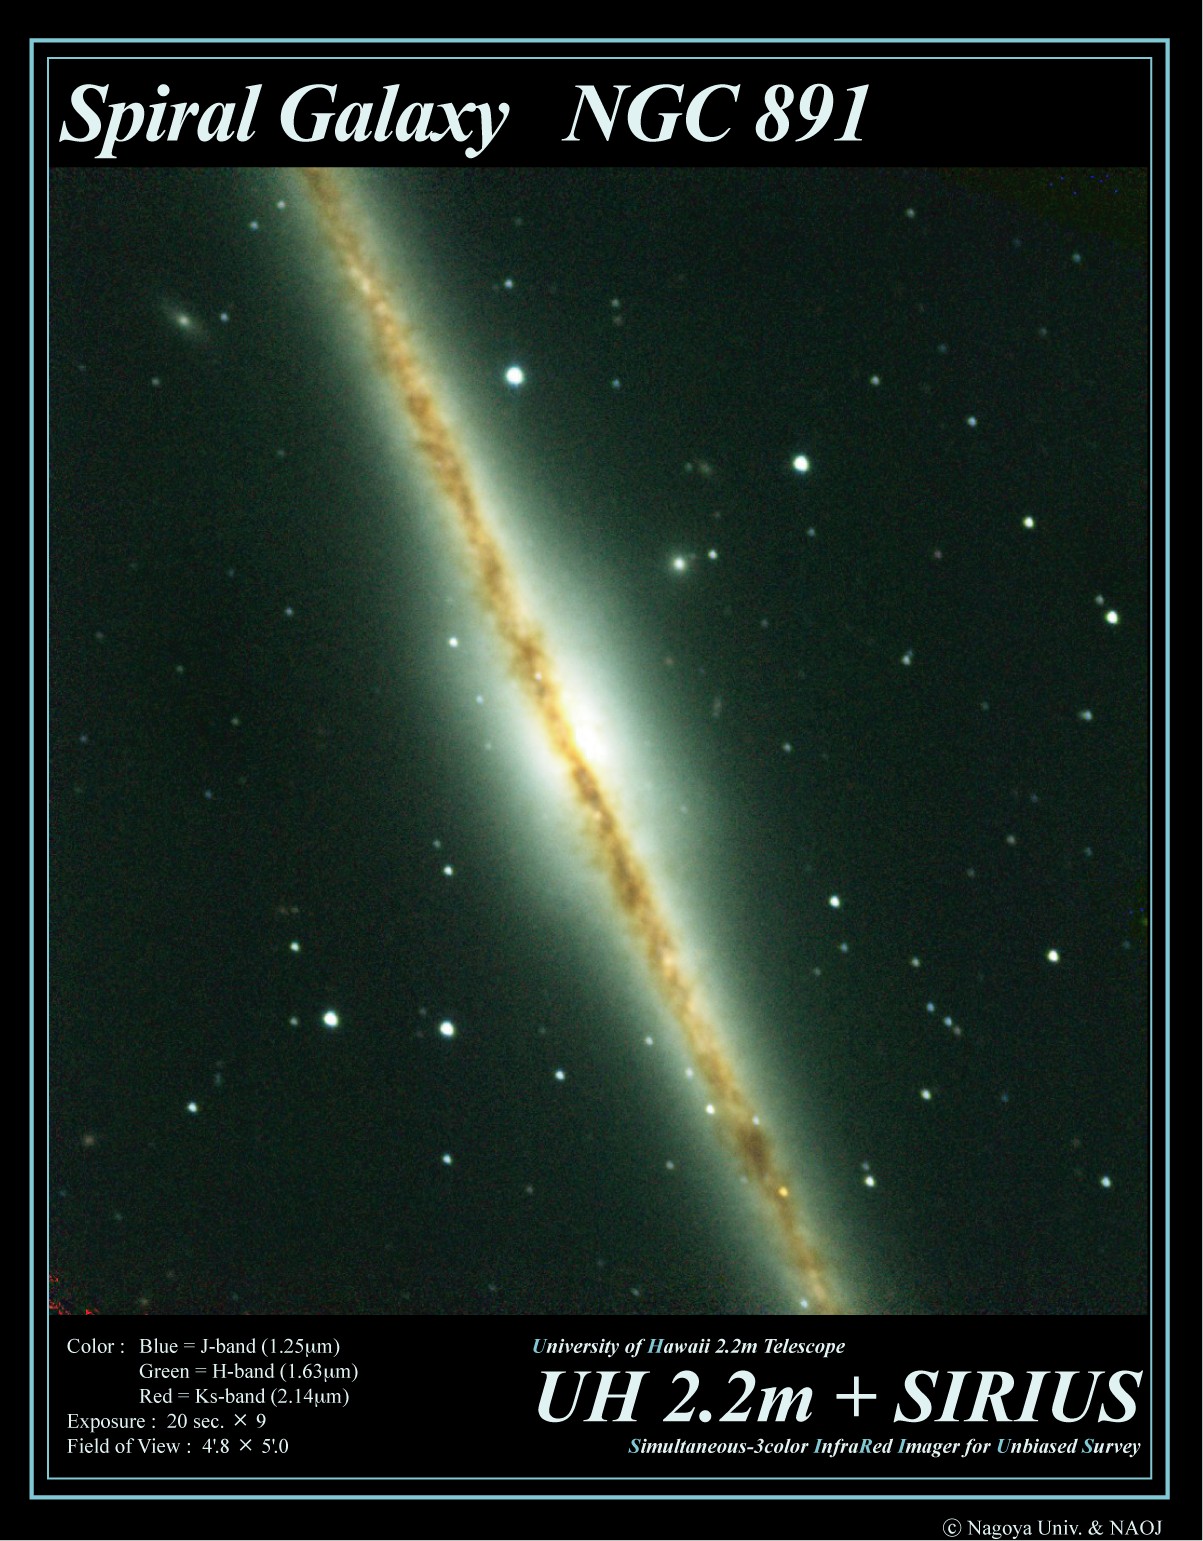 External Galaxy NGC891